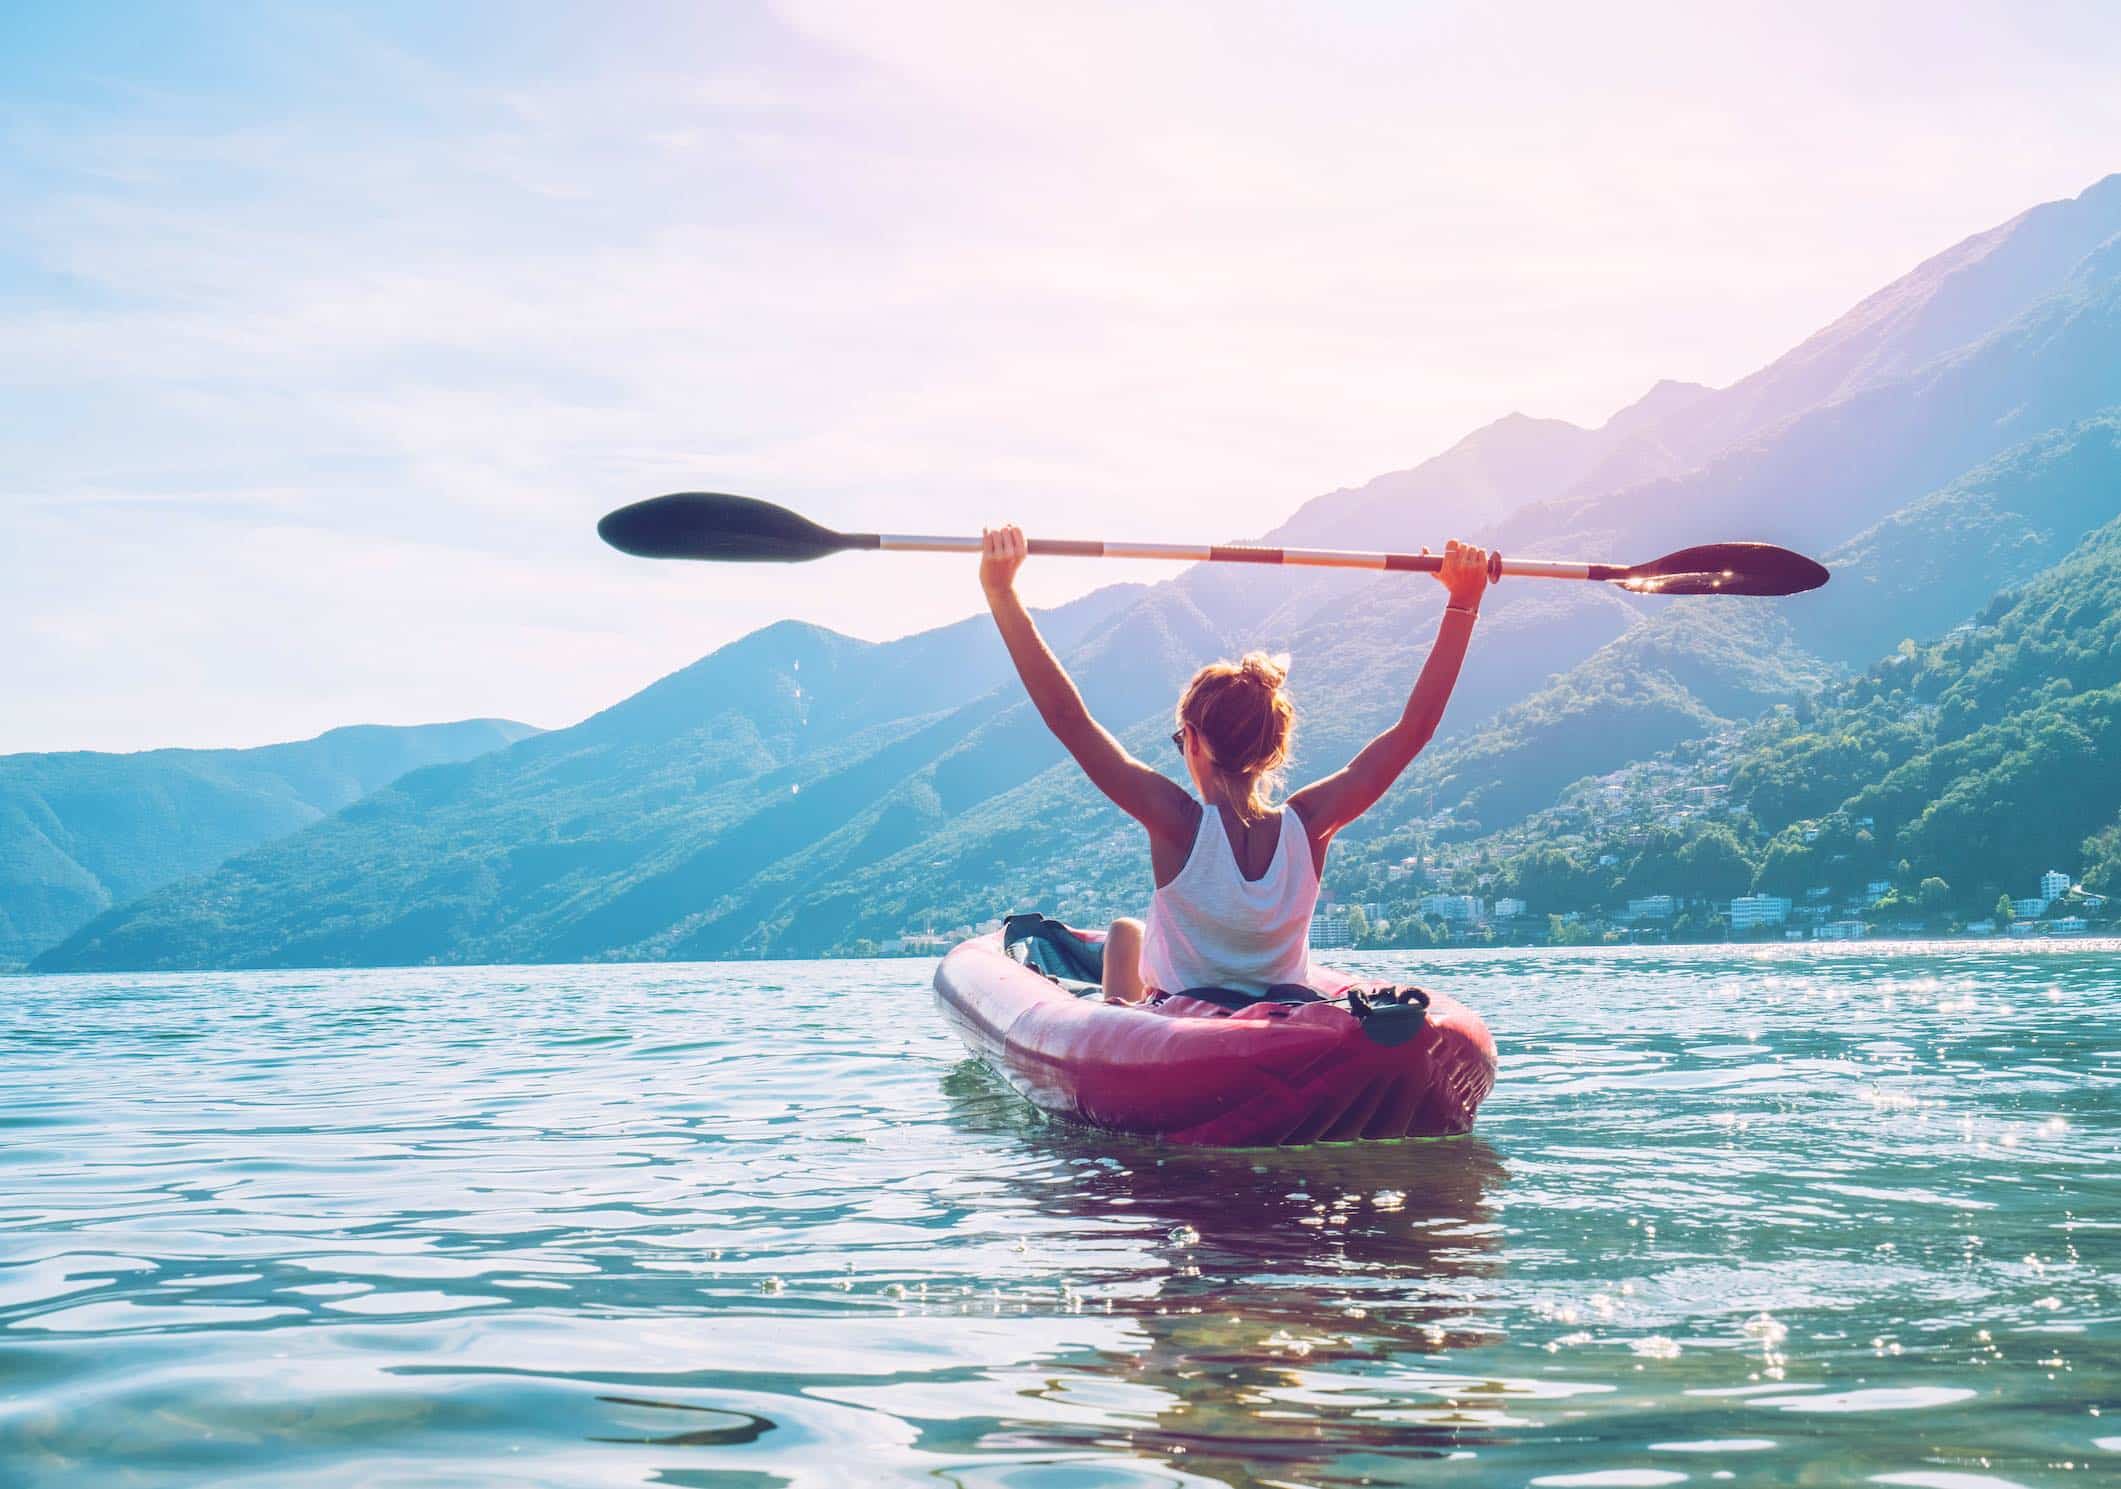 호수 위에서 카누를 타며 자유를 만끽하는 젊은 여성